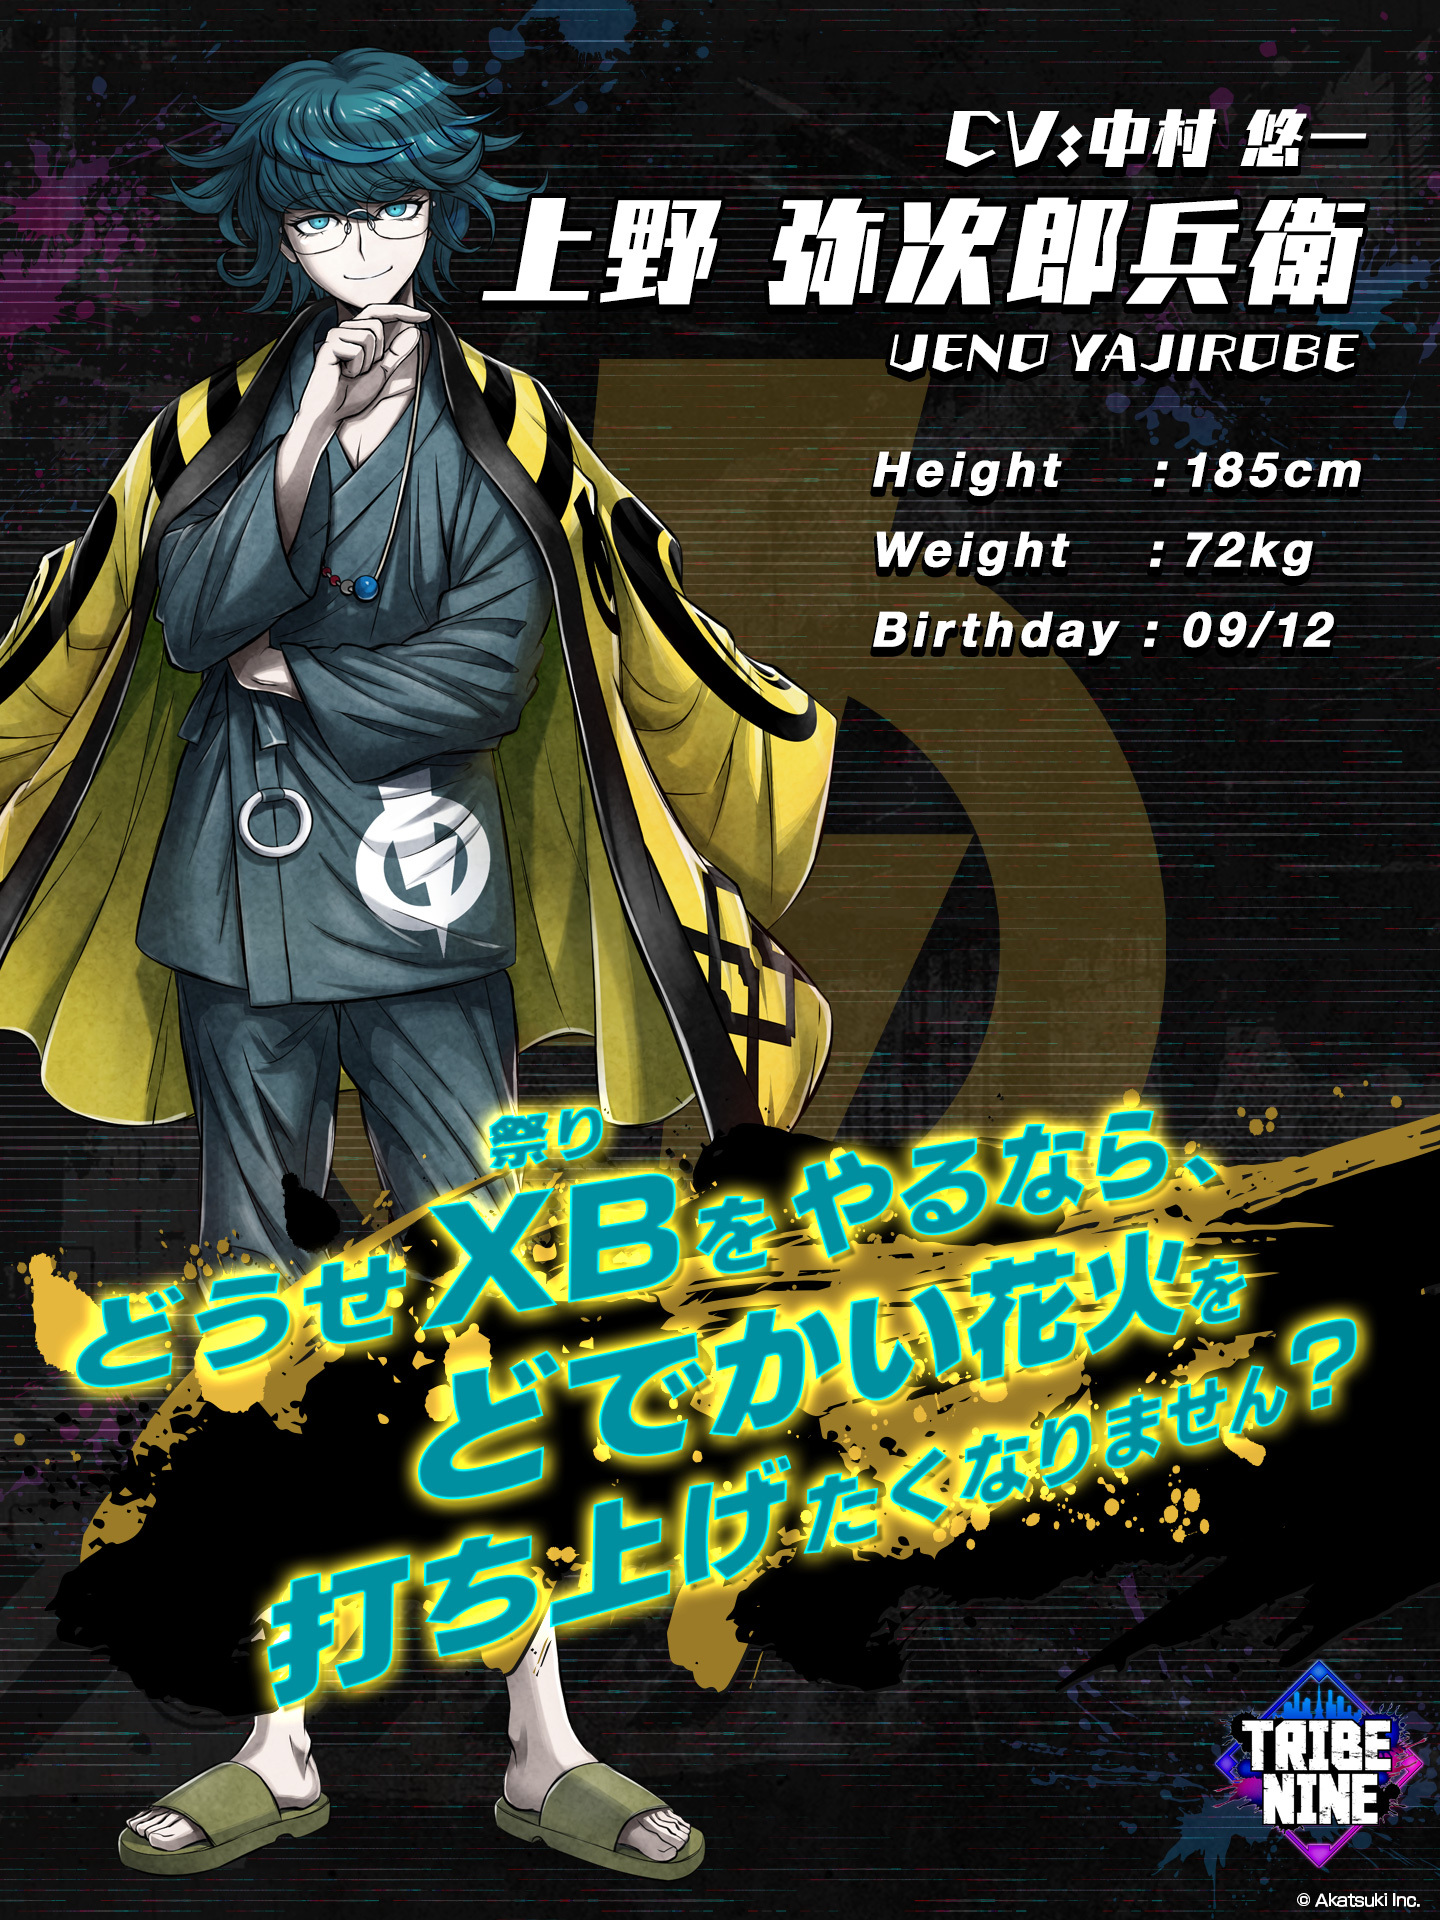 Eine Charaktereinstellung von Yajirobe Ueno aus dem kommenden Tribe Nine TV-Anime.  Yajirobe ist ein junger Mann mit blasser Haut, blauen Augen und zerzausten dunklen Haaren.  Er trägt einen Sommerkimono und einen Happi-Mantel und Sandalen.